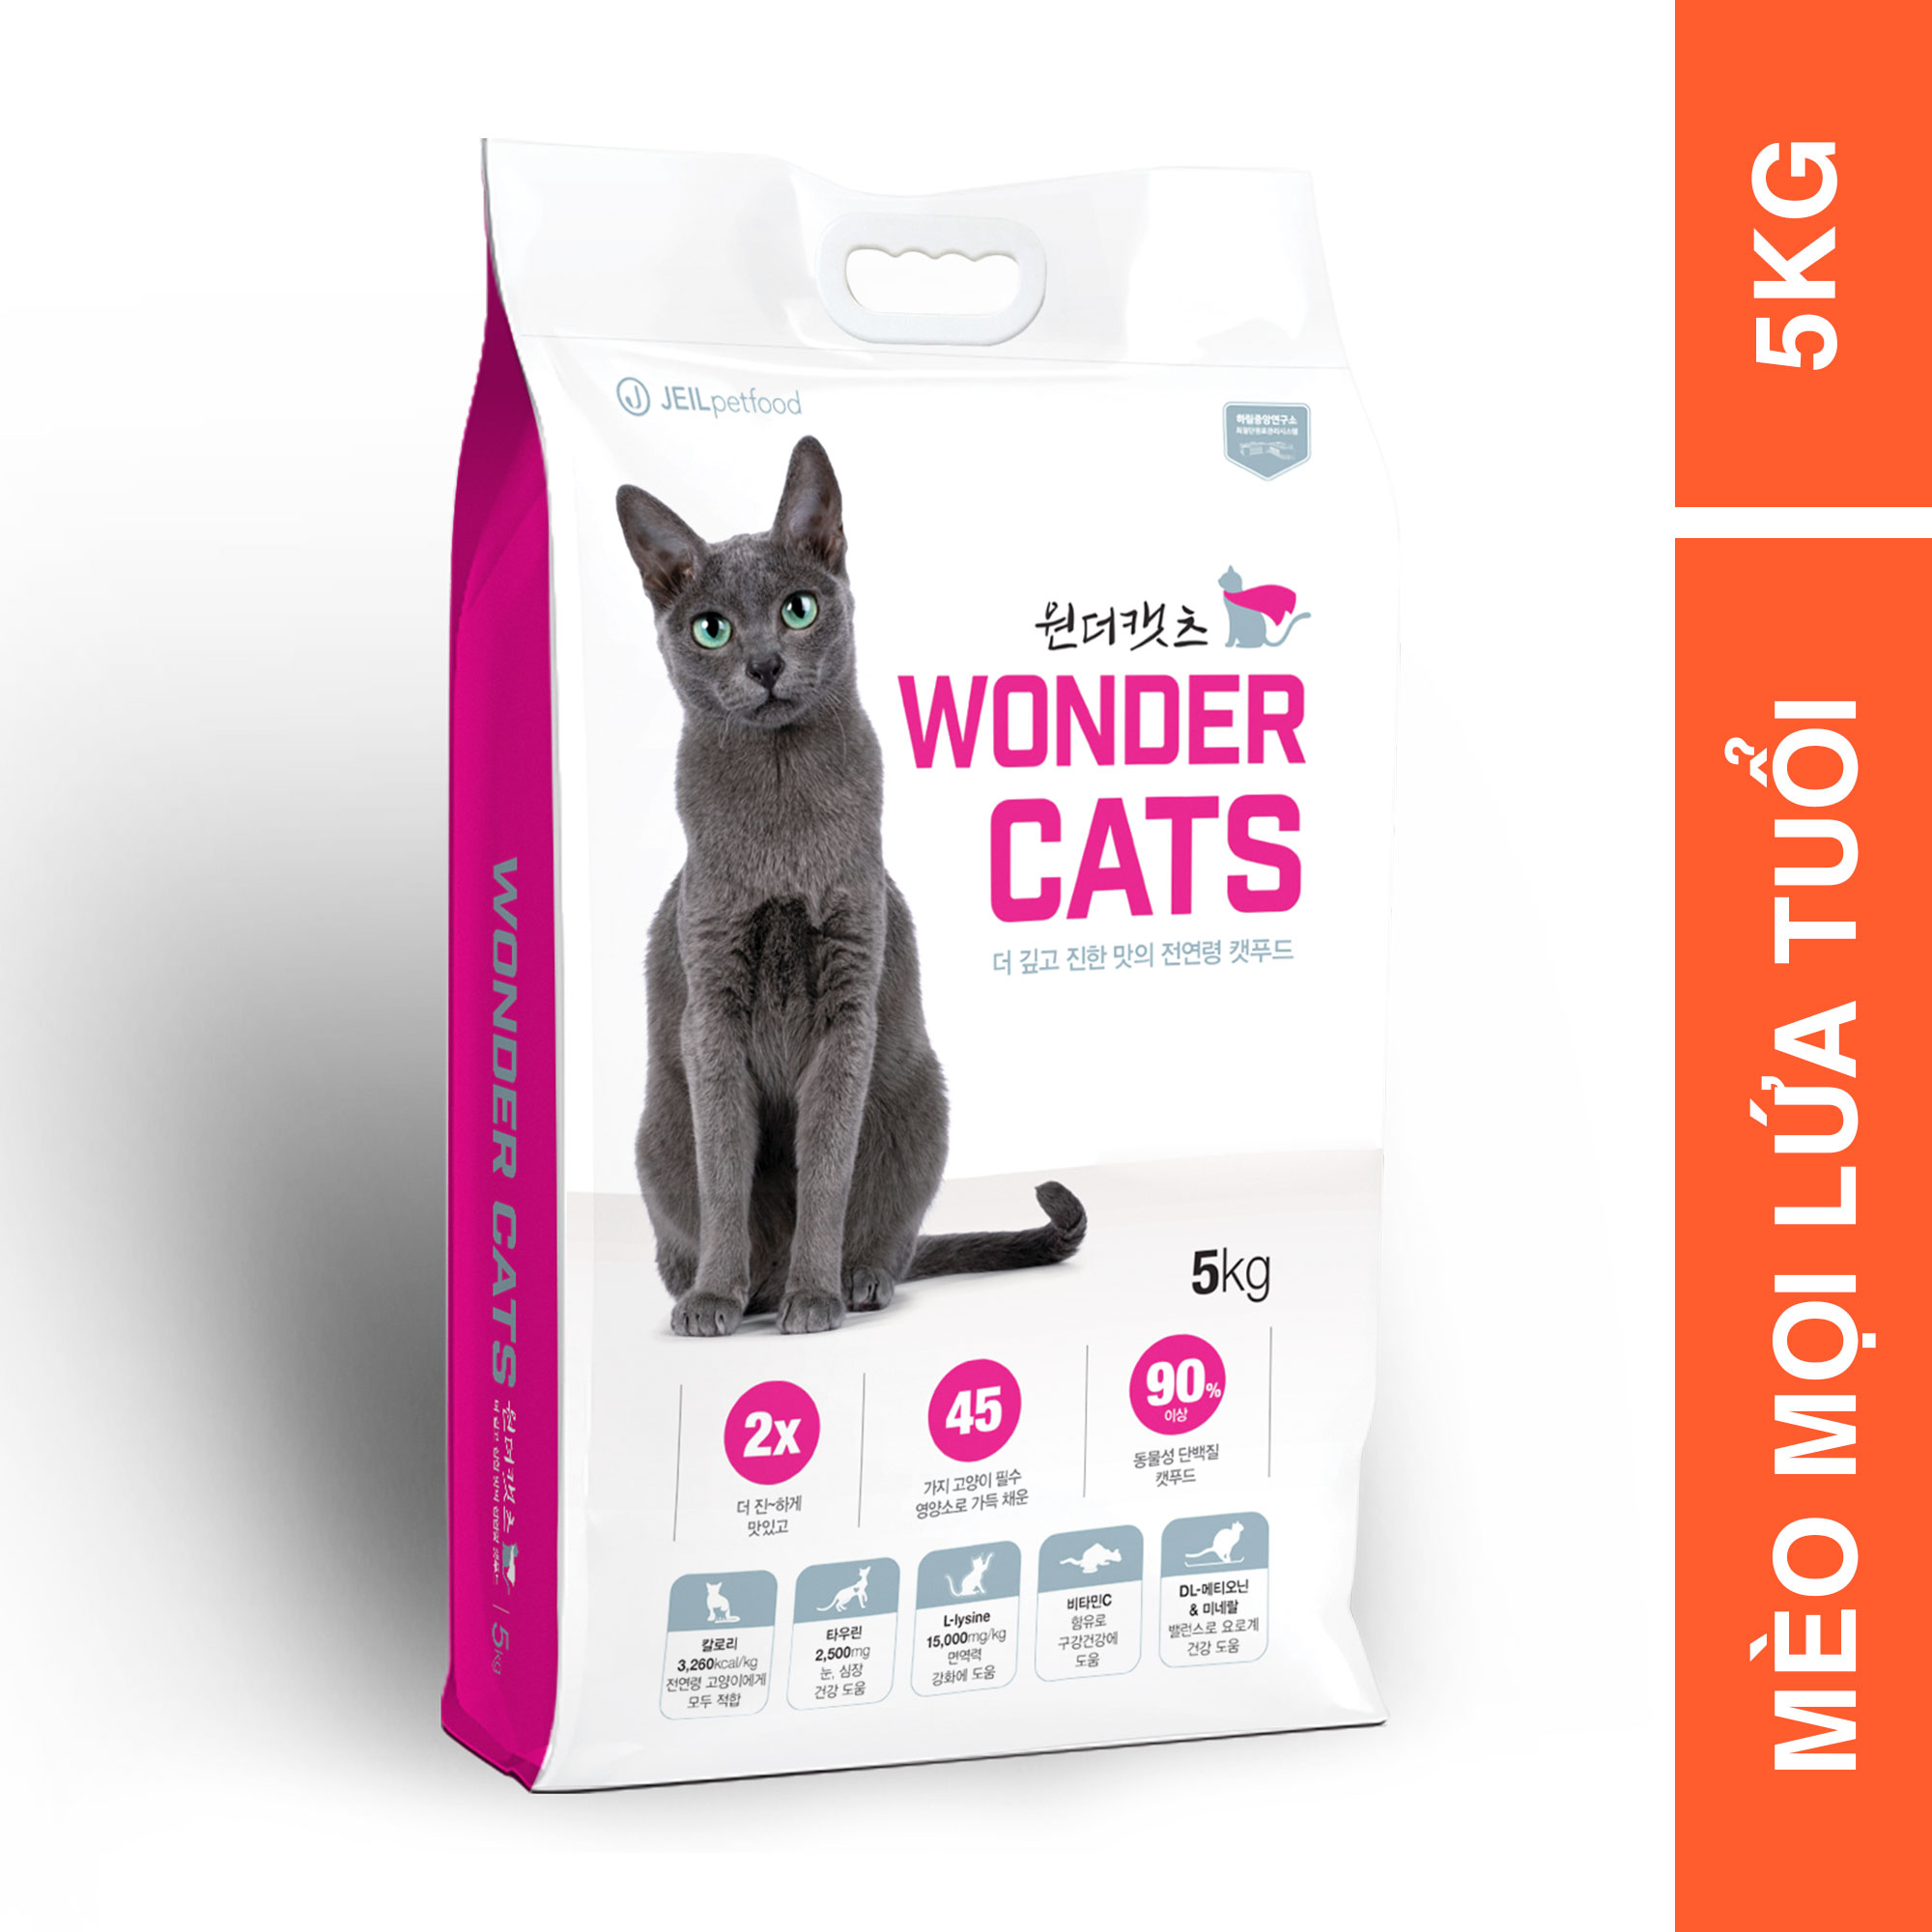 [5KG] - Thức ăn dành cho mèo mọi lứa tuổi Wonder Cats  nhập khẩu Hàn Quốc